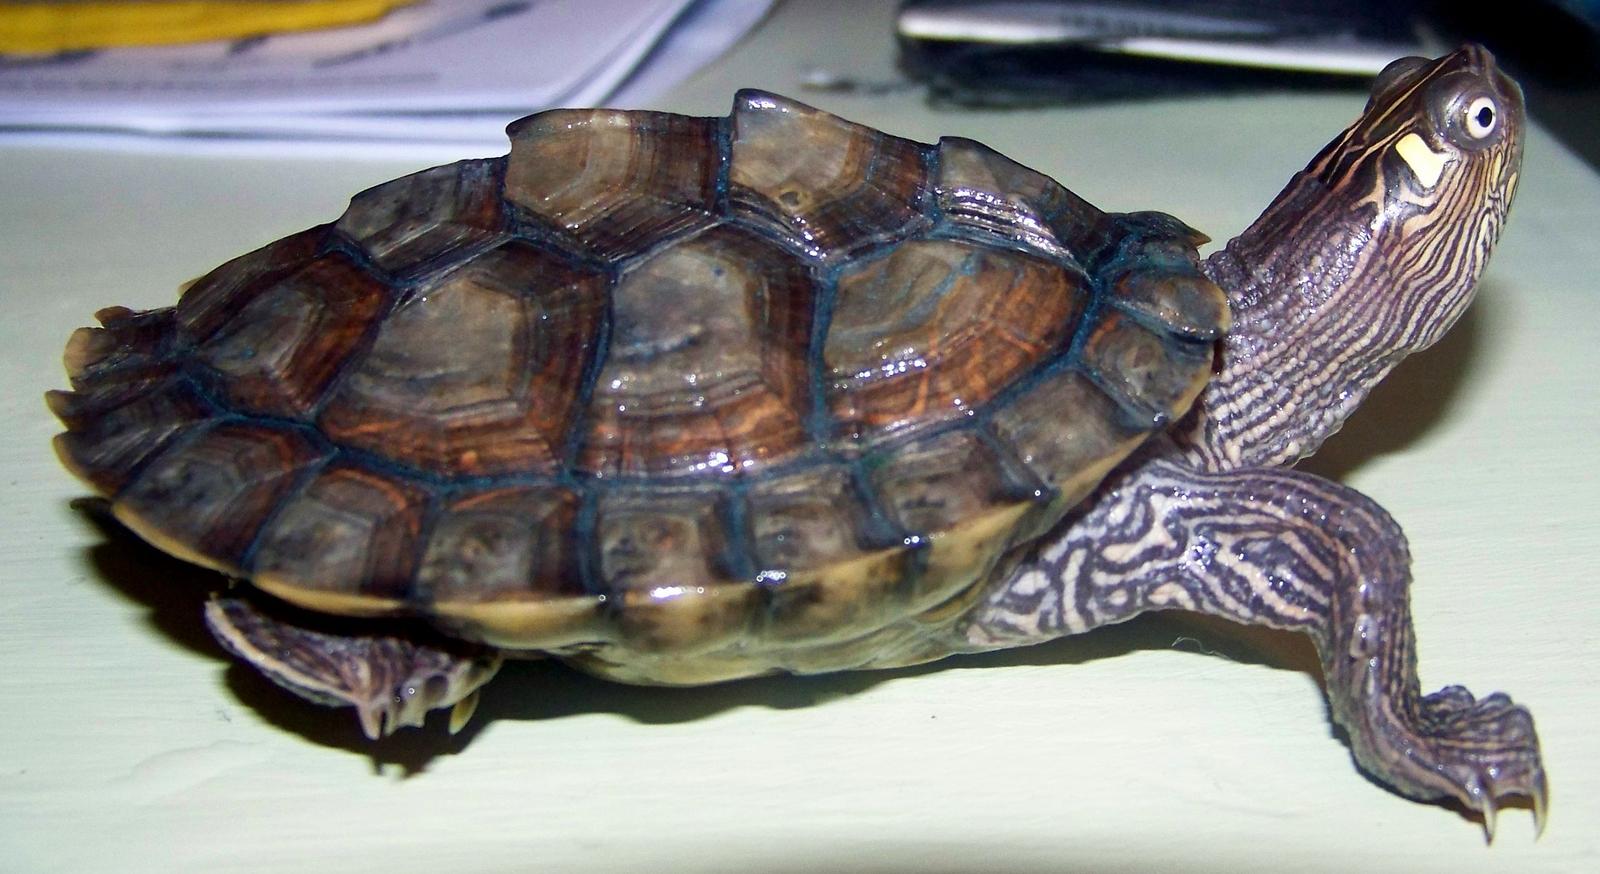 Определить вид черепахи по фото онлайн